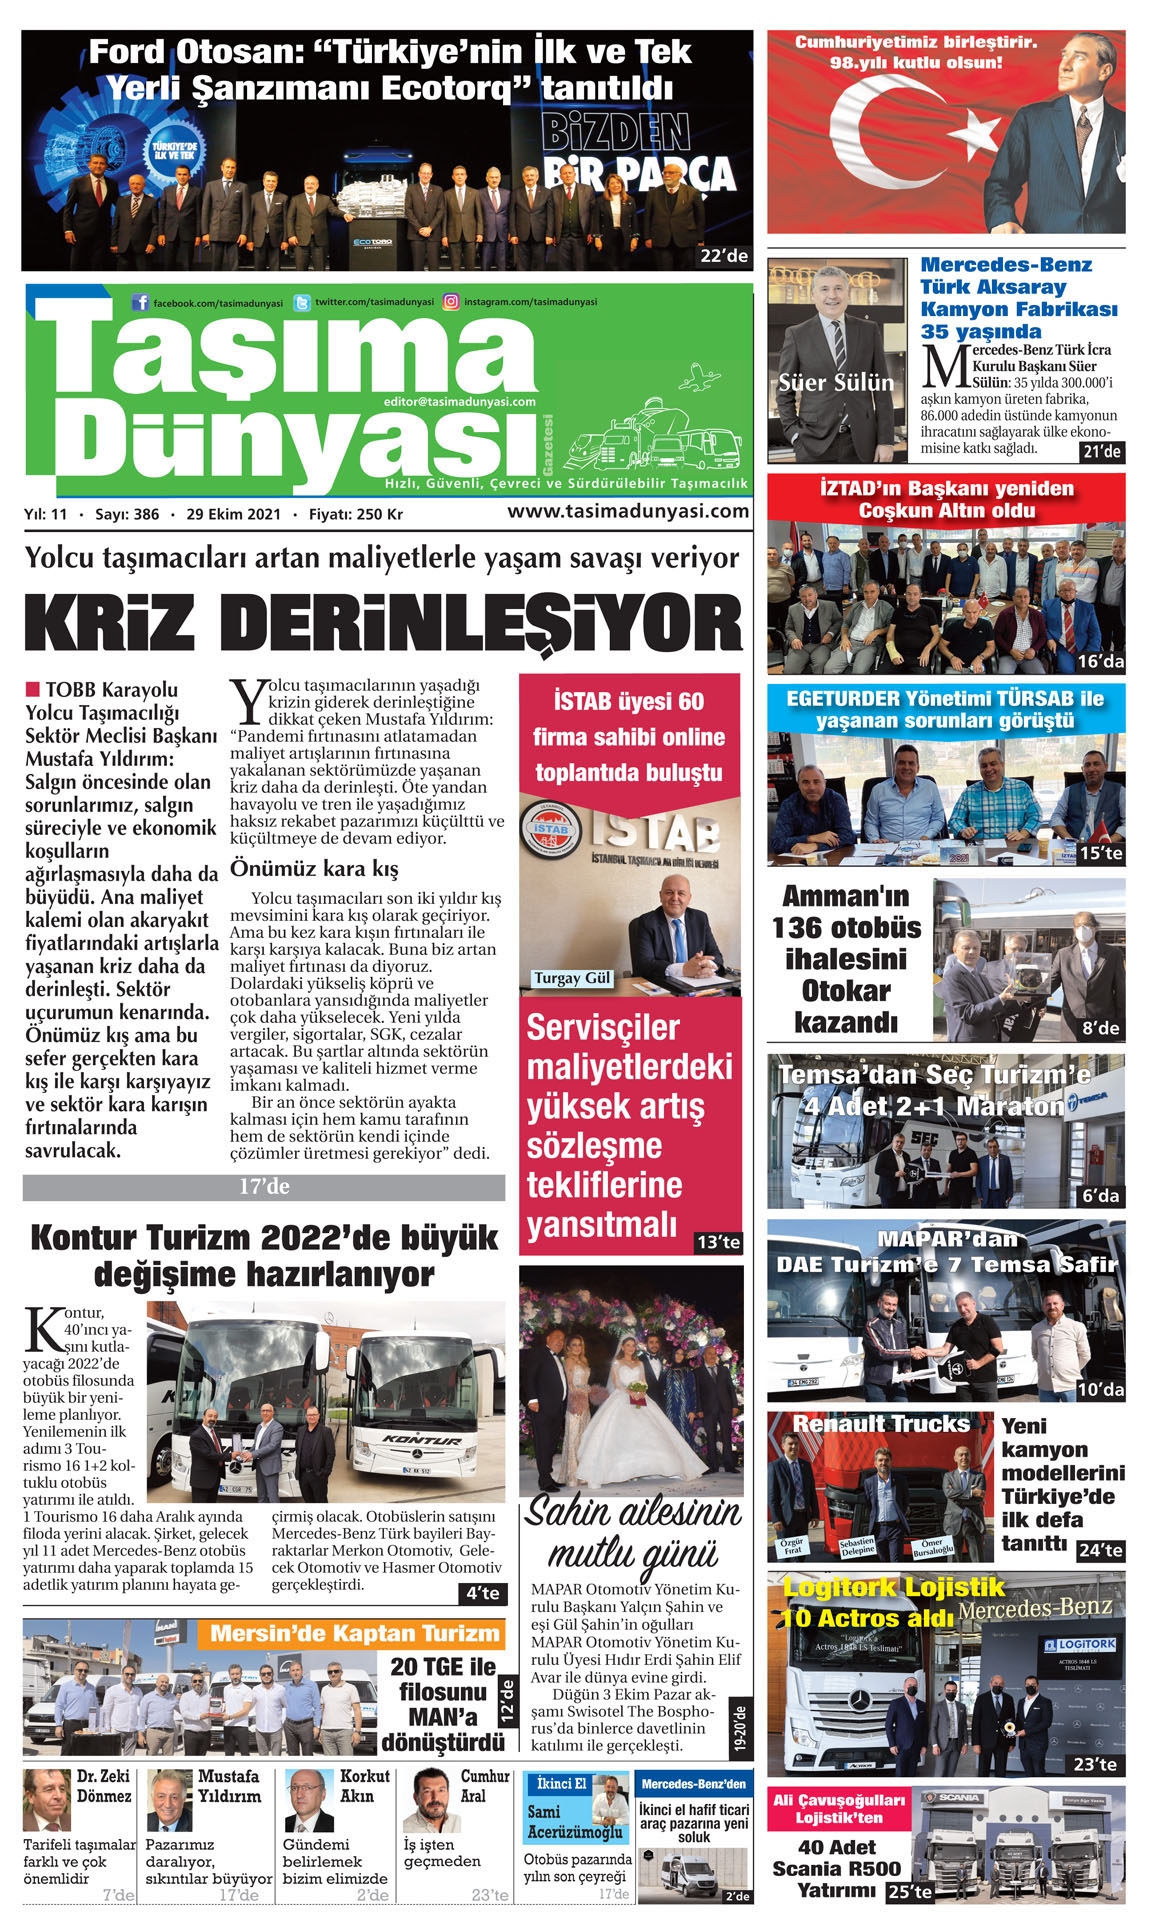 Taşıma Dünyası Gazetesi - 29.10.2021 Manşeti